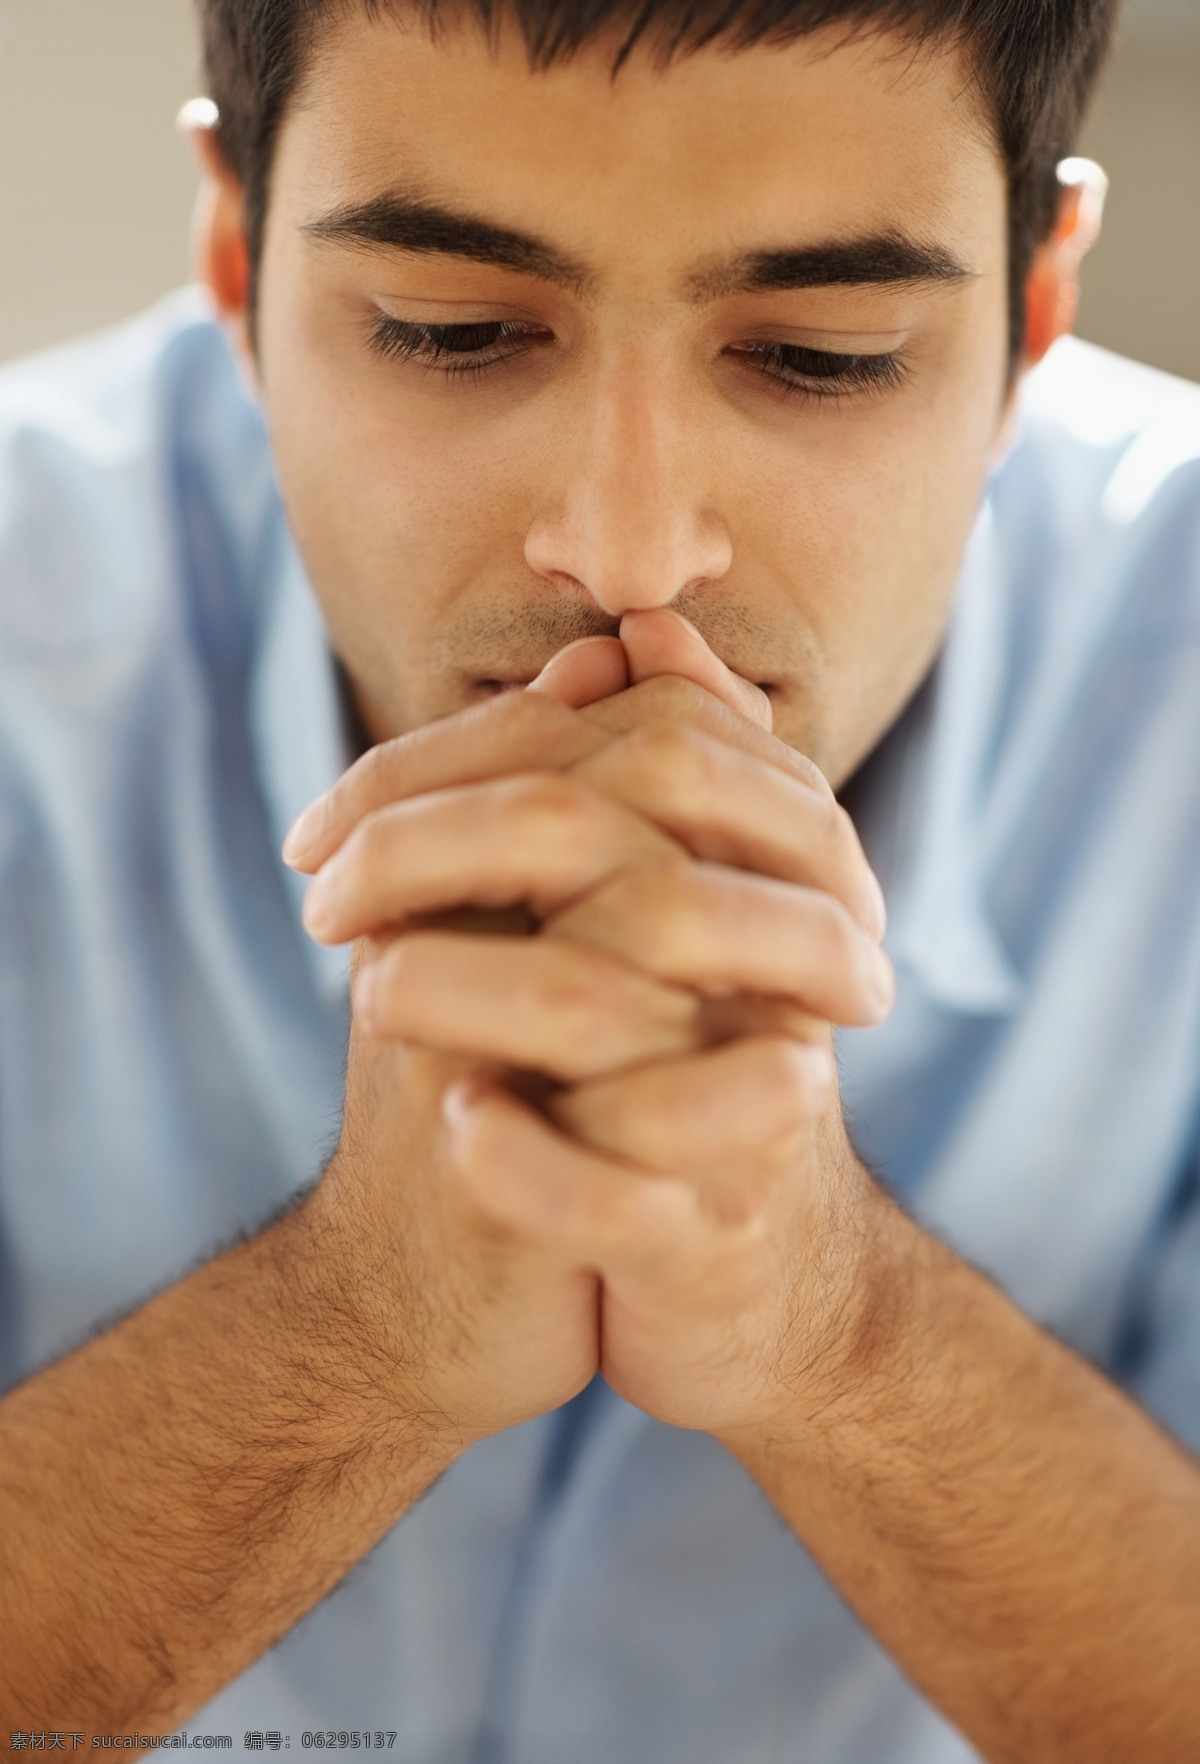 祷告 男人 祈祷 祝福 祈祷的男人 生活人物 人物图片